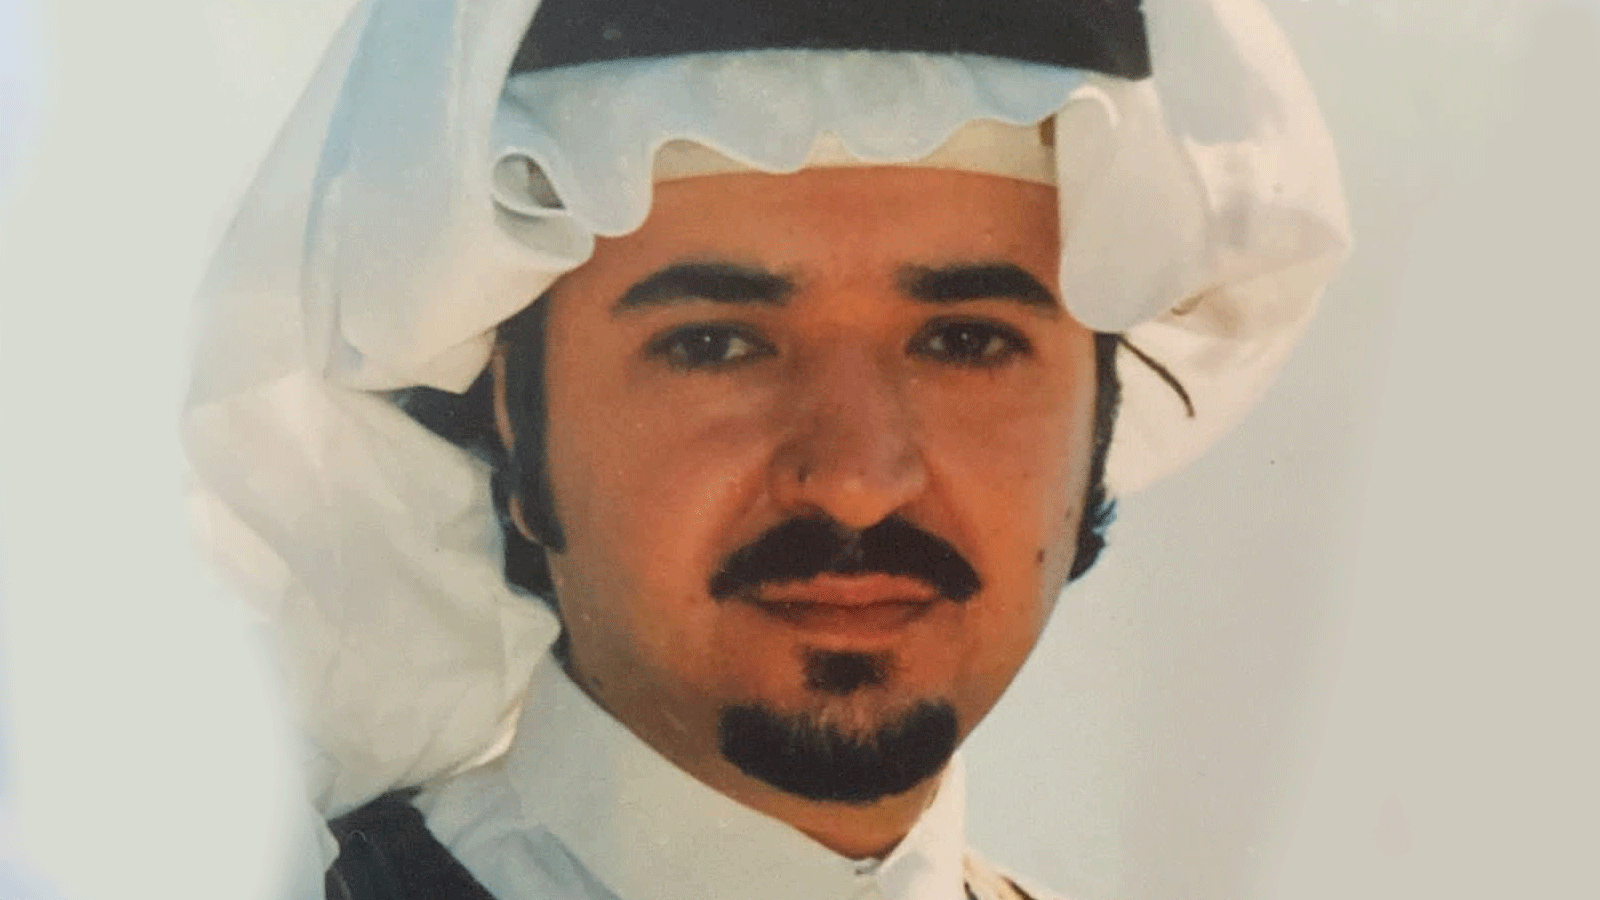  الممثل خالد حمد الدسيماني، المعروف فنيًّا بـ